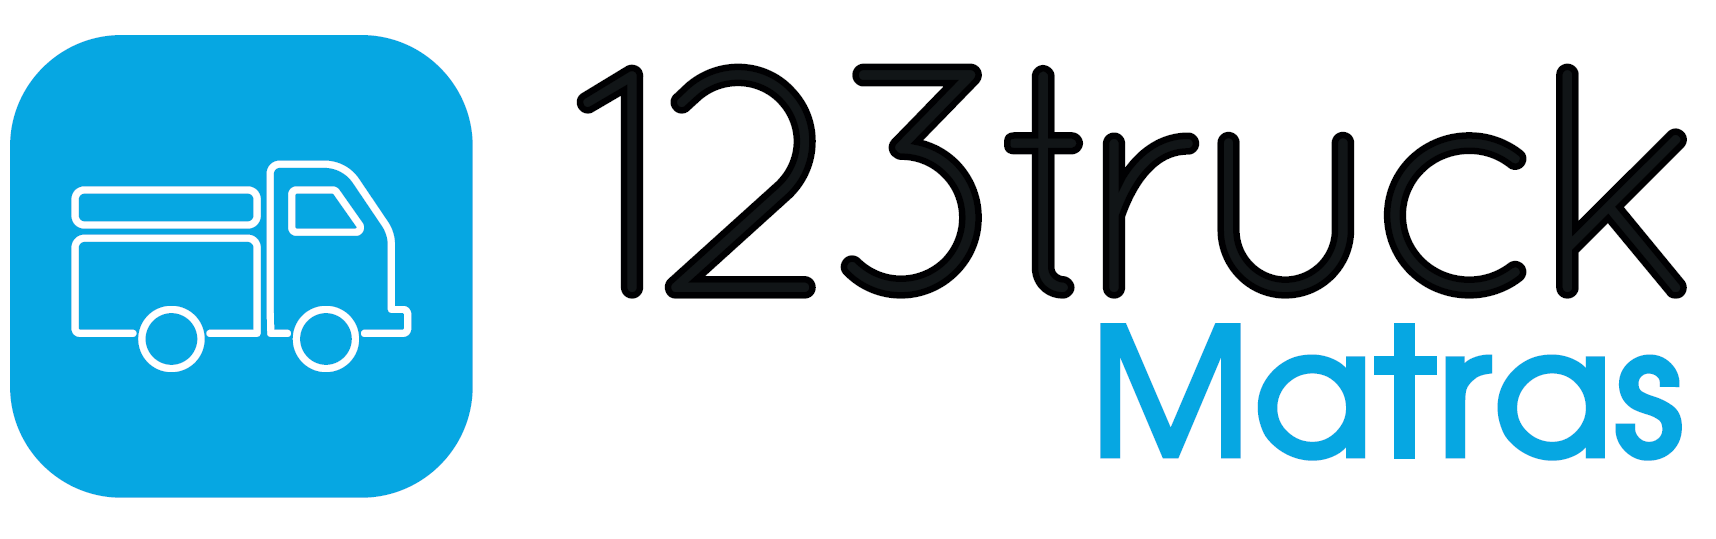 123TruckMatras Logo